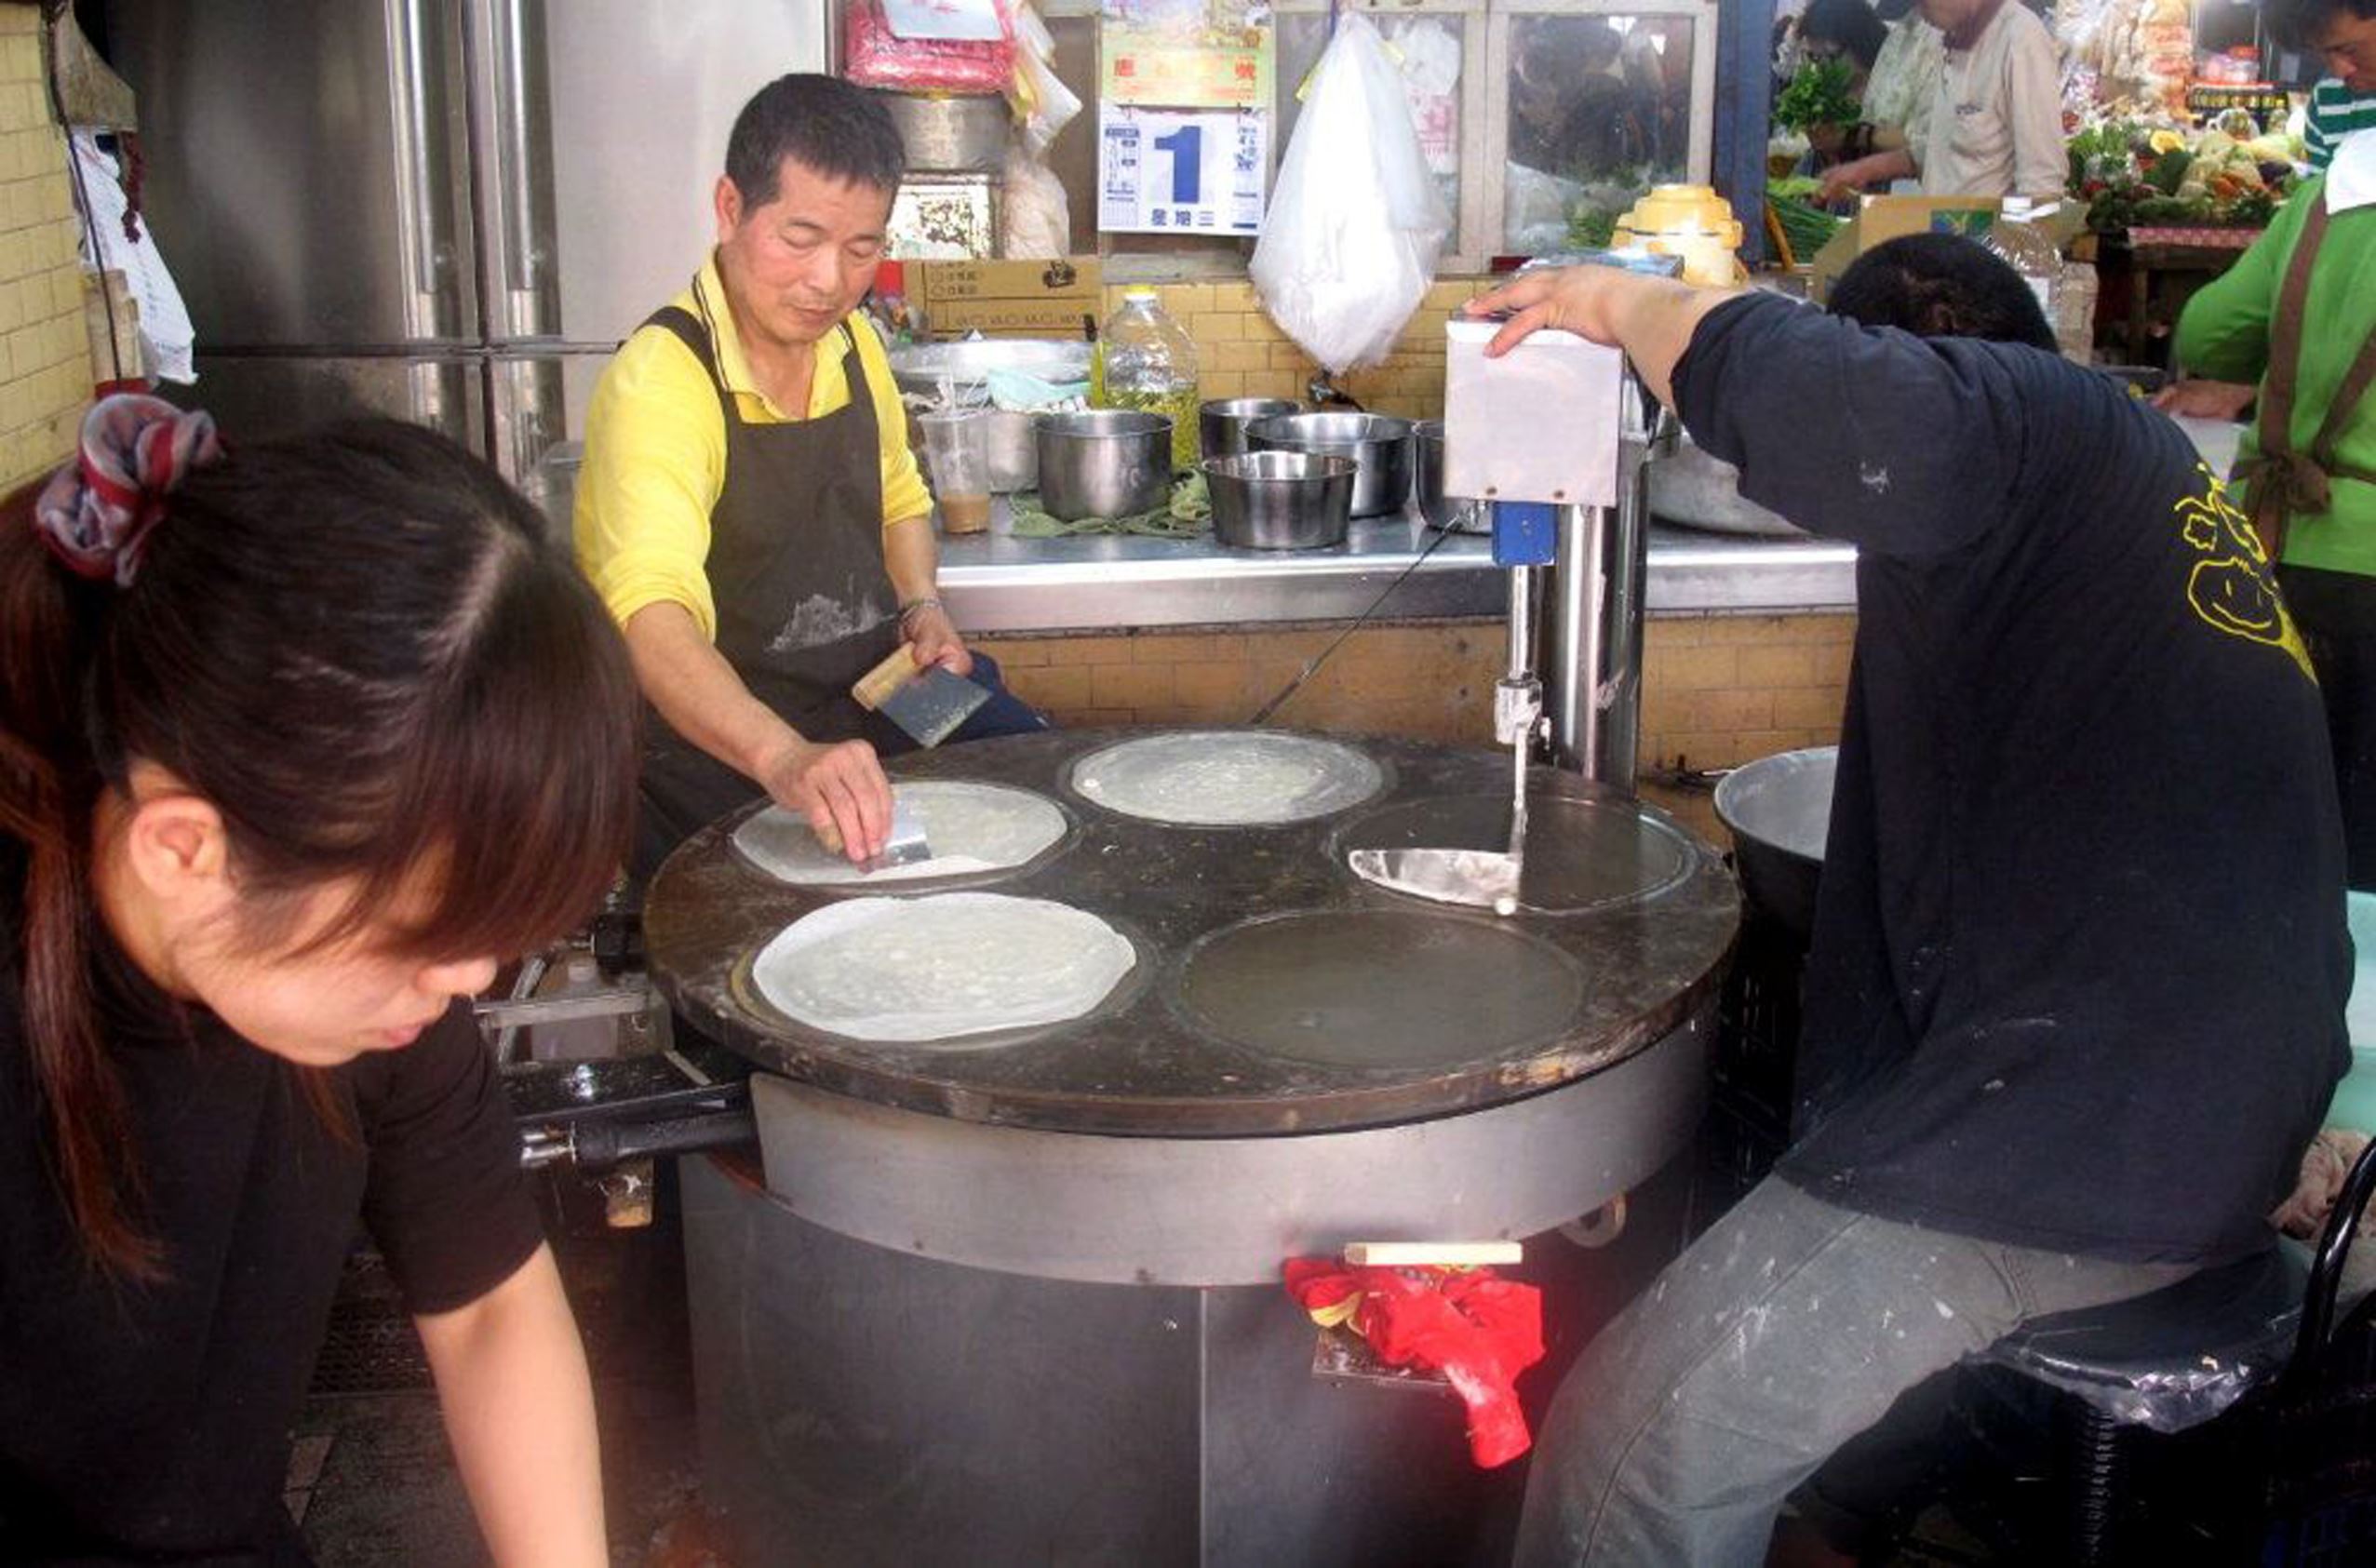 距清明節還有1個星期，27日在馬公北辰市場上已有商
家推出手工或半機械化的的應景潤餅皮，不少鄉親或民
眾搶先品嚐這銅板價的傳統「手捲」好滋味。